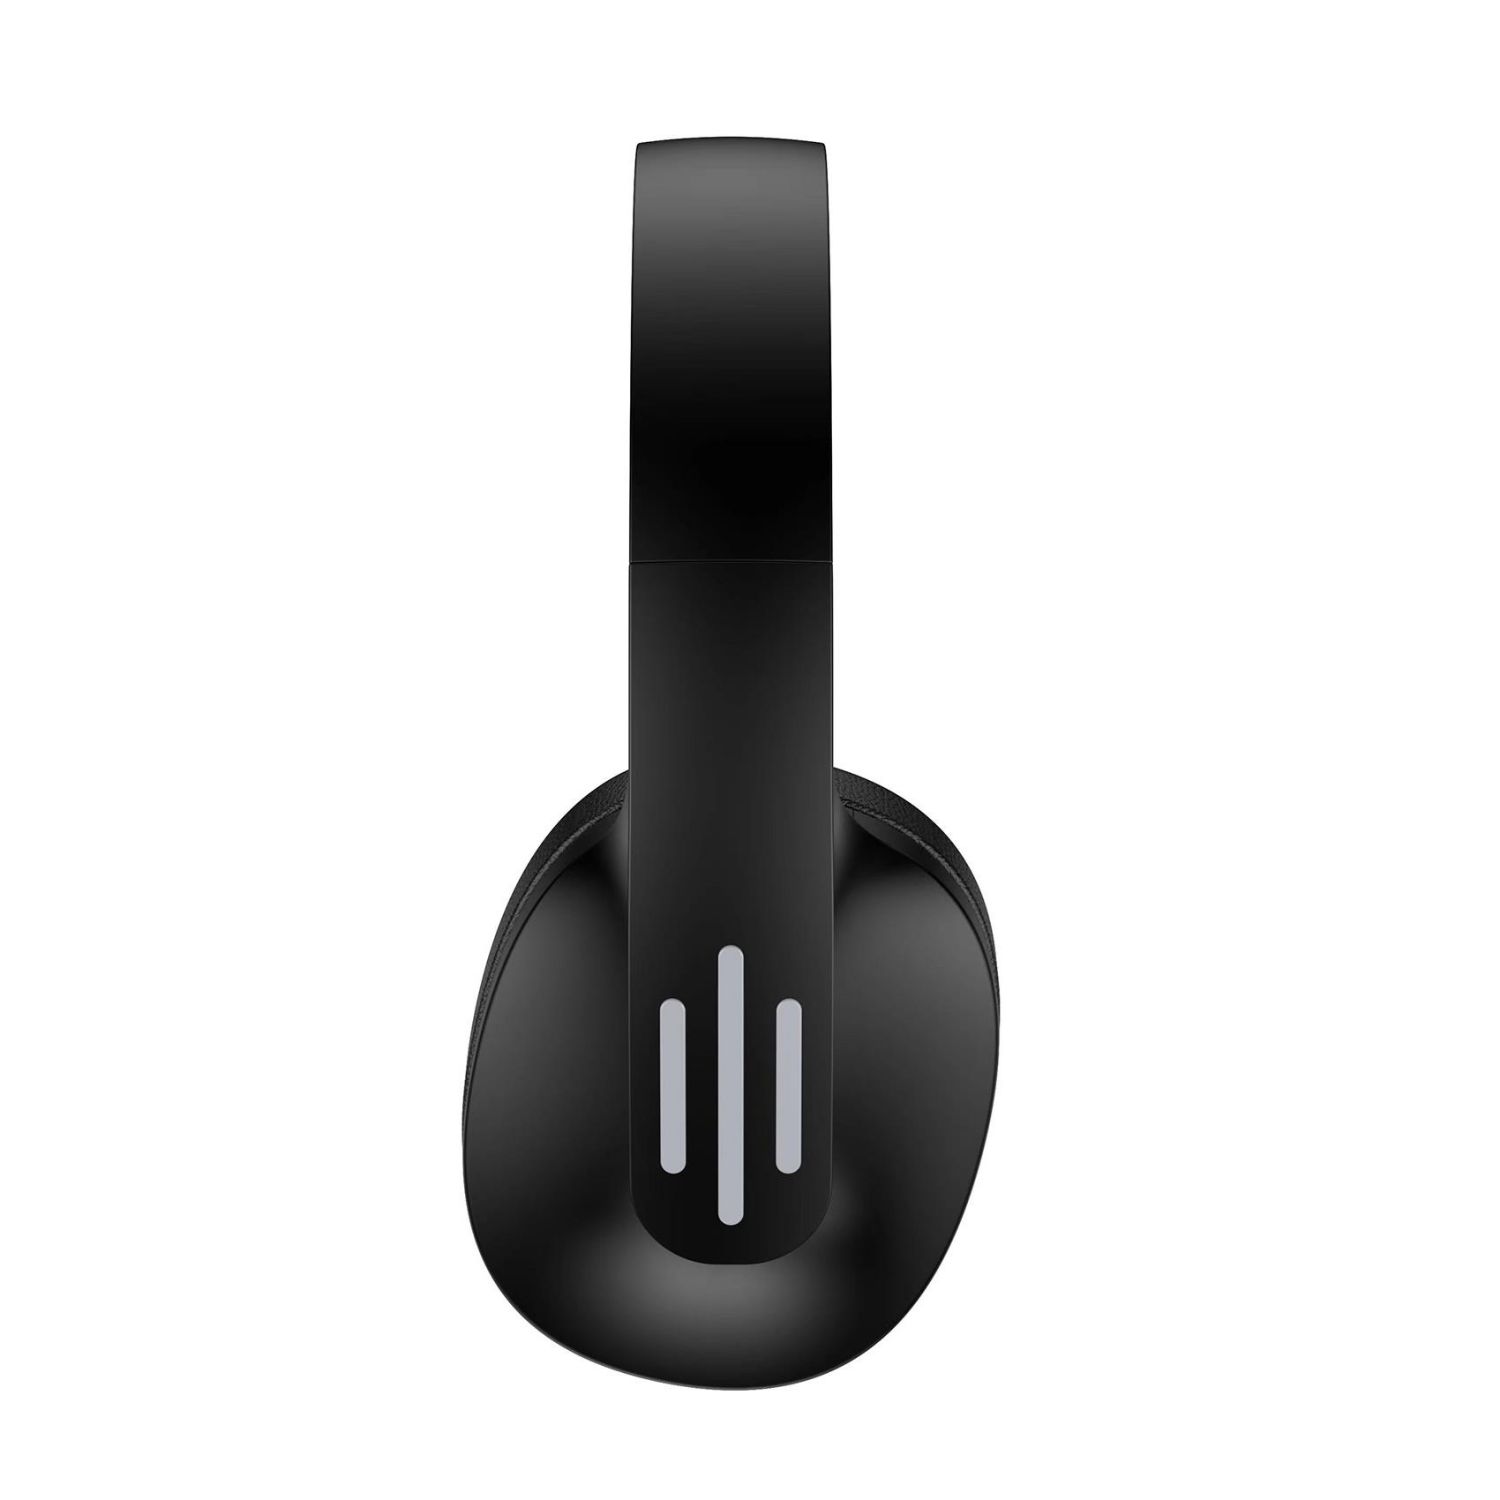 FLOWBEATBK - Auriculares CELLY Micrfono Integrado Bluetooth 10m Negros (FLOWBEATBK)